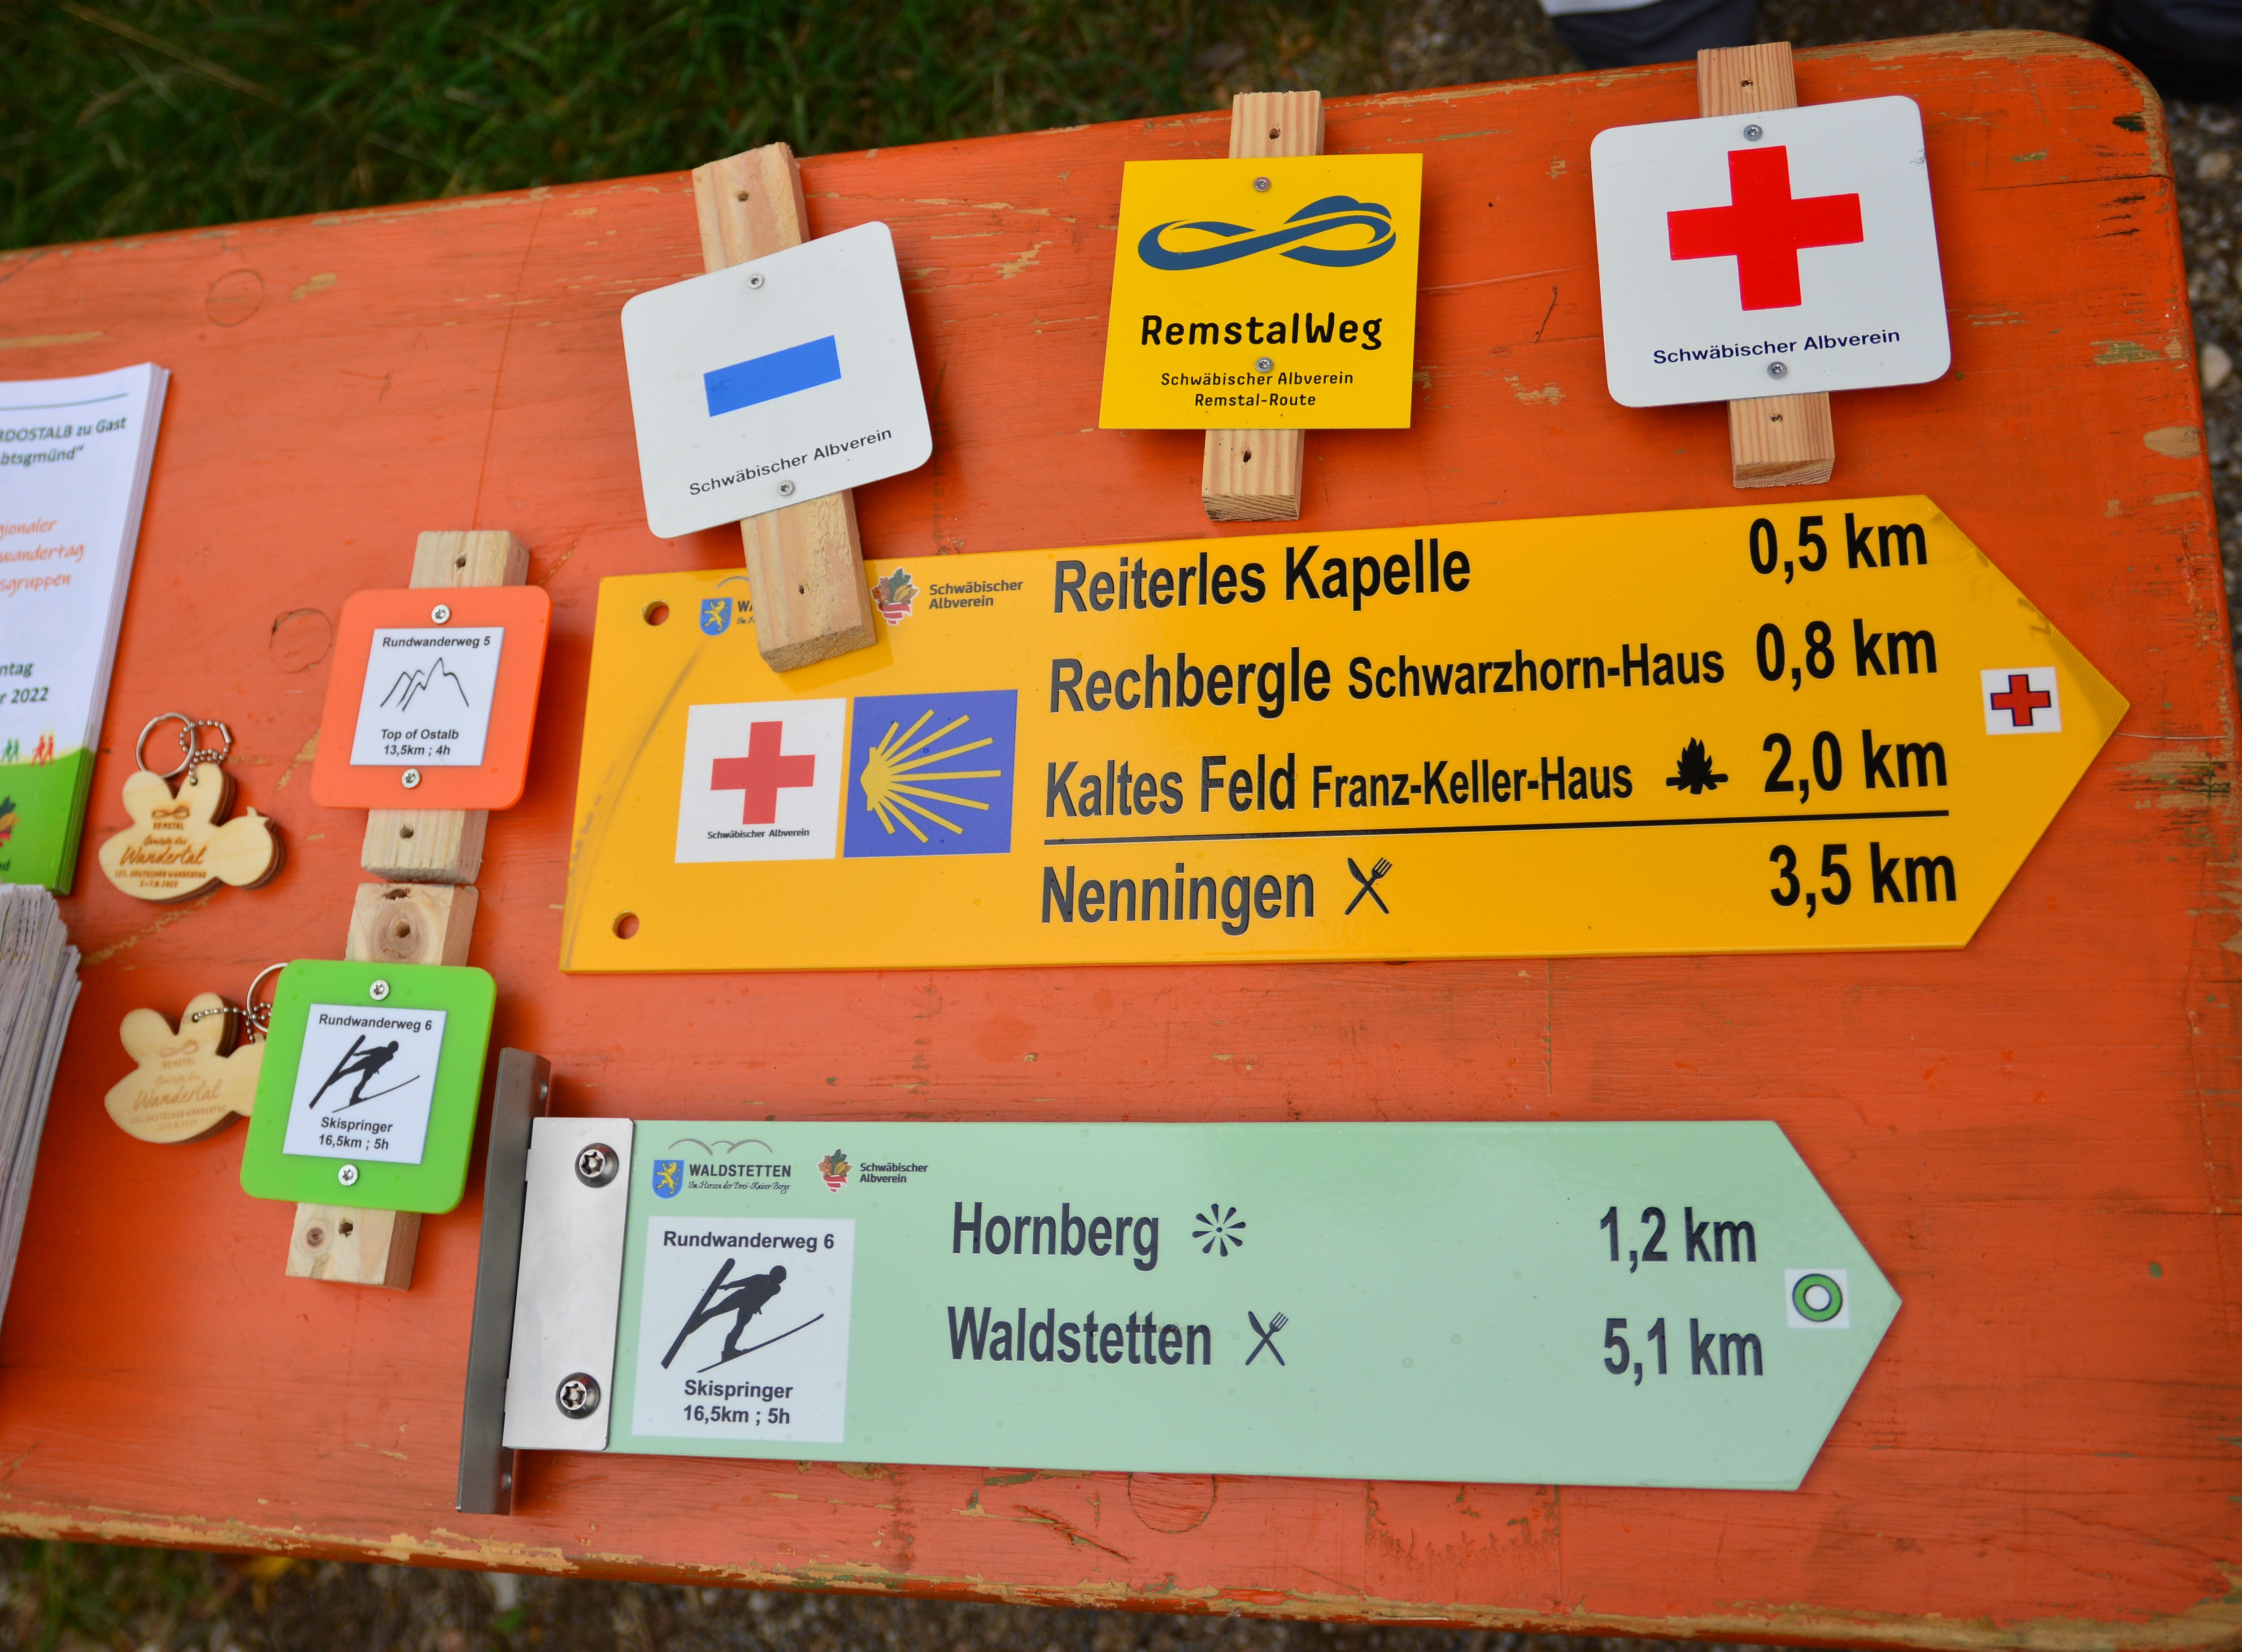  Zahlreiche informative Schilder weisen seit 2019 die Wanderwege in der Region und schlossen die Lücke zwischen den Löwenpfaden in Göppingen und dem Wegenetz im Remstal. 